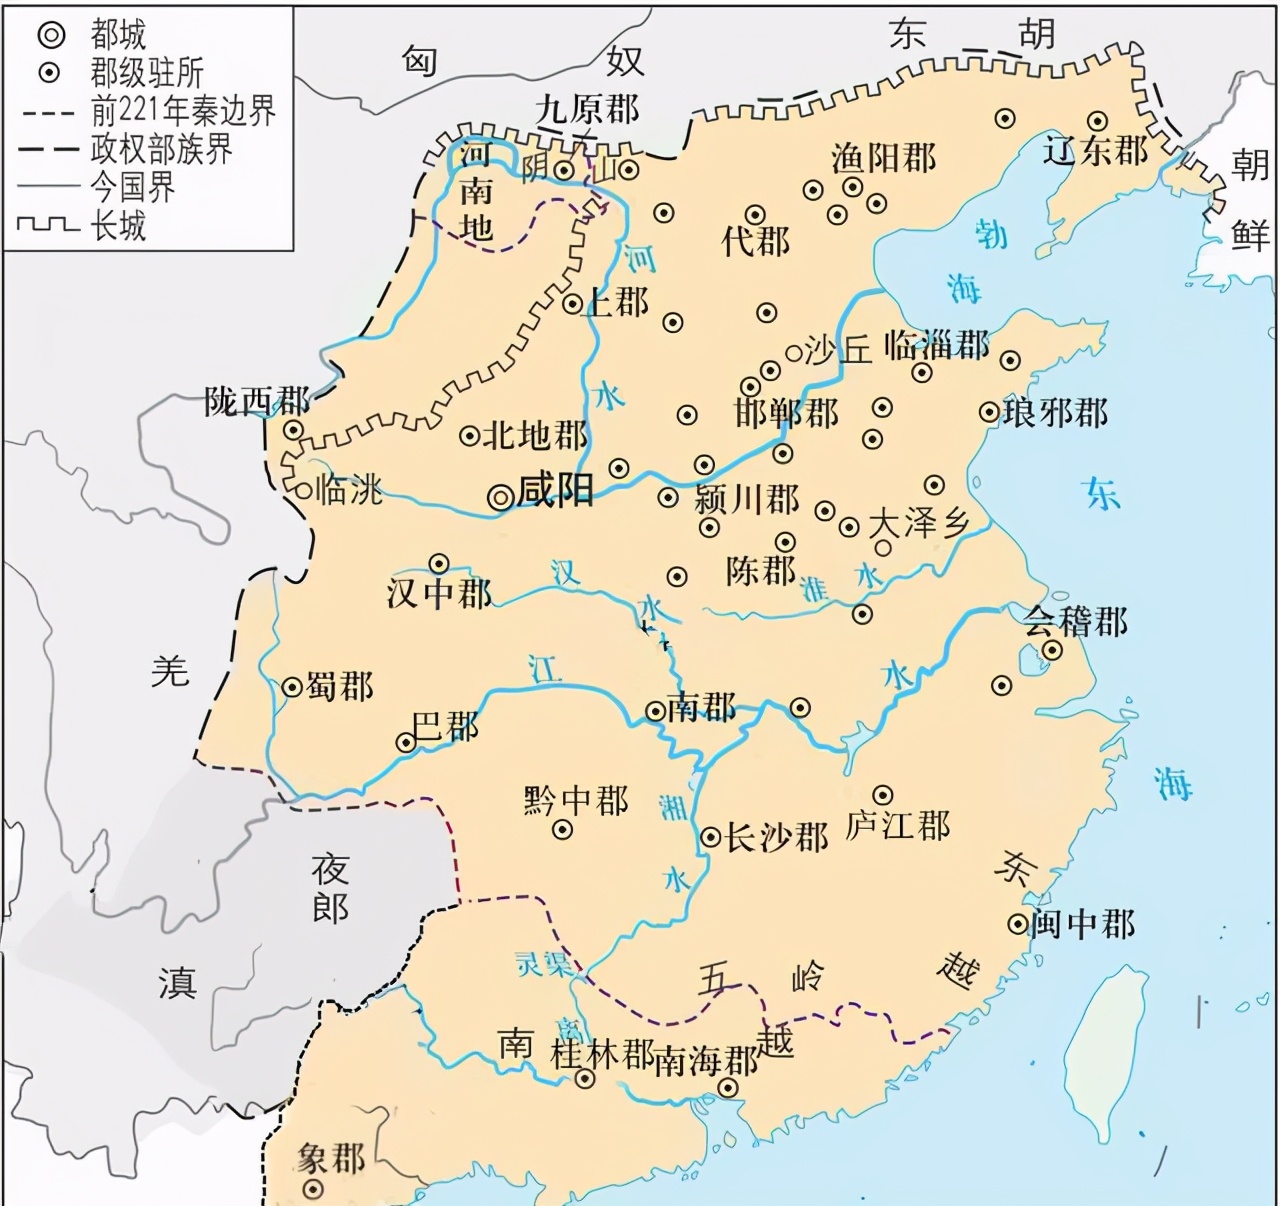 从秦朝三十六郡，到清朝十八省，哪个王朝对中国版图贡献最大？